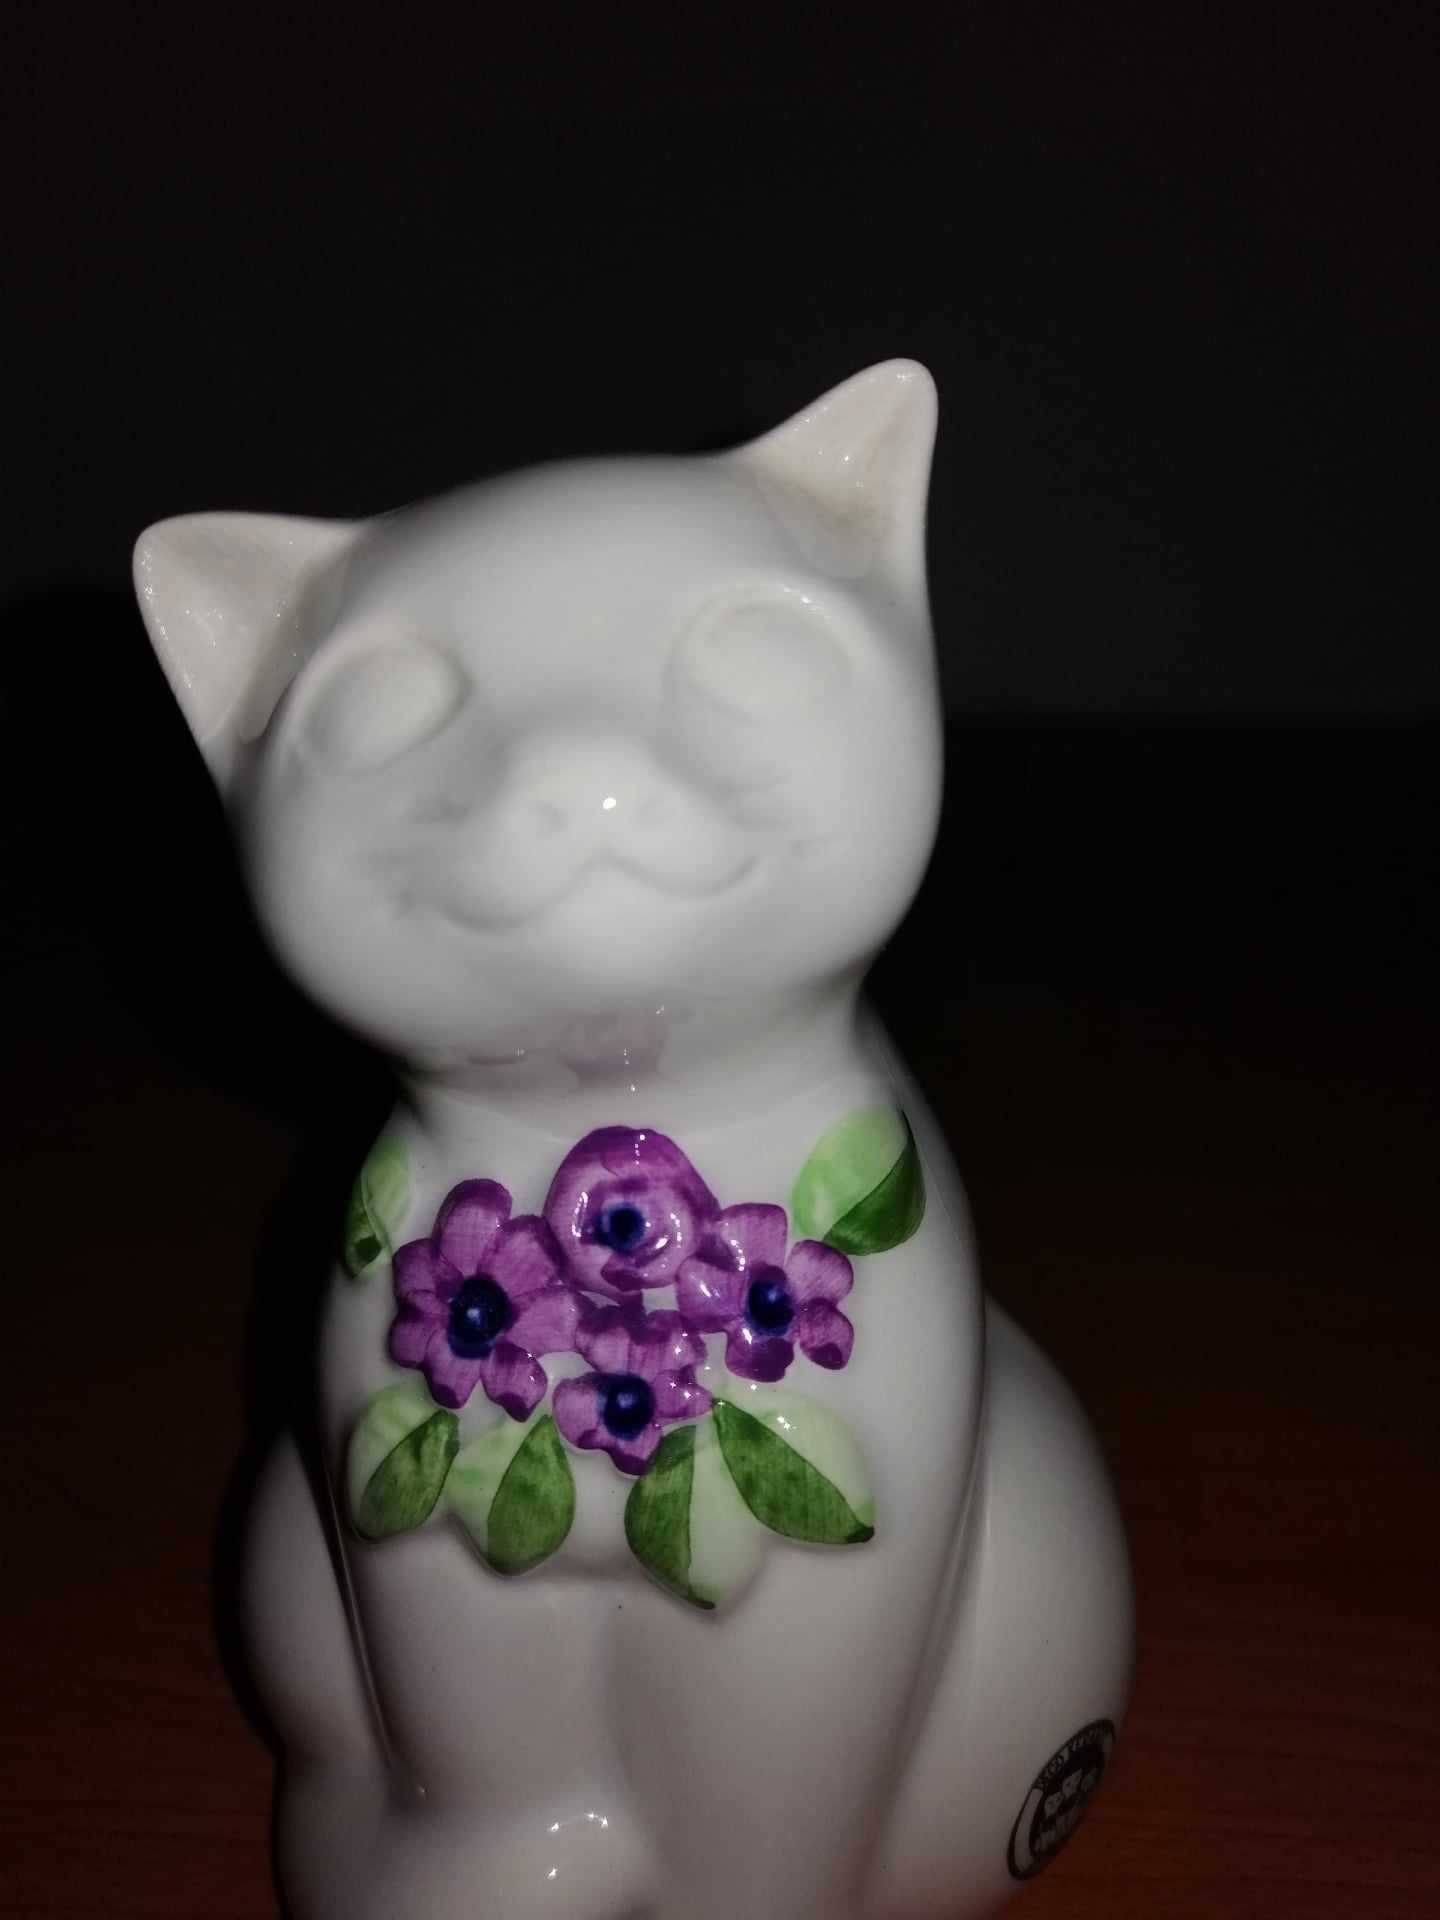 Figurina Pisica ceramica stilizata cu flori mov Rosa Ljung Deco Suedia